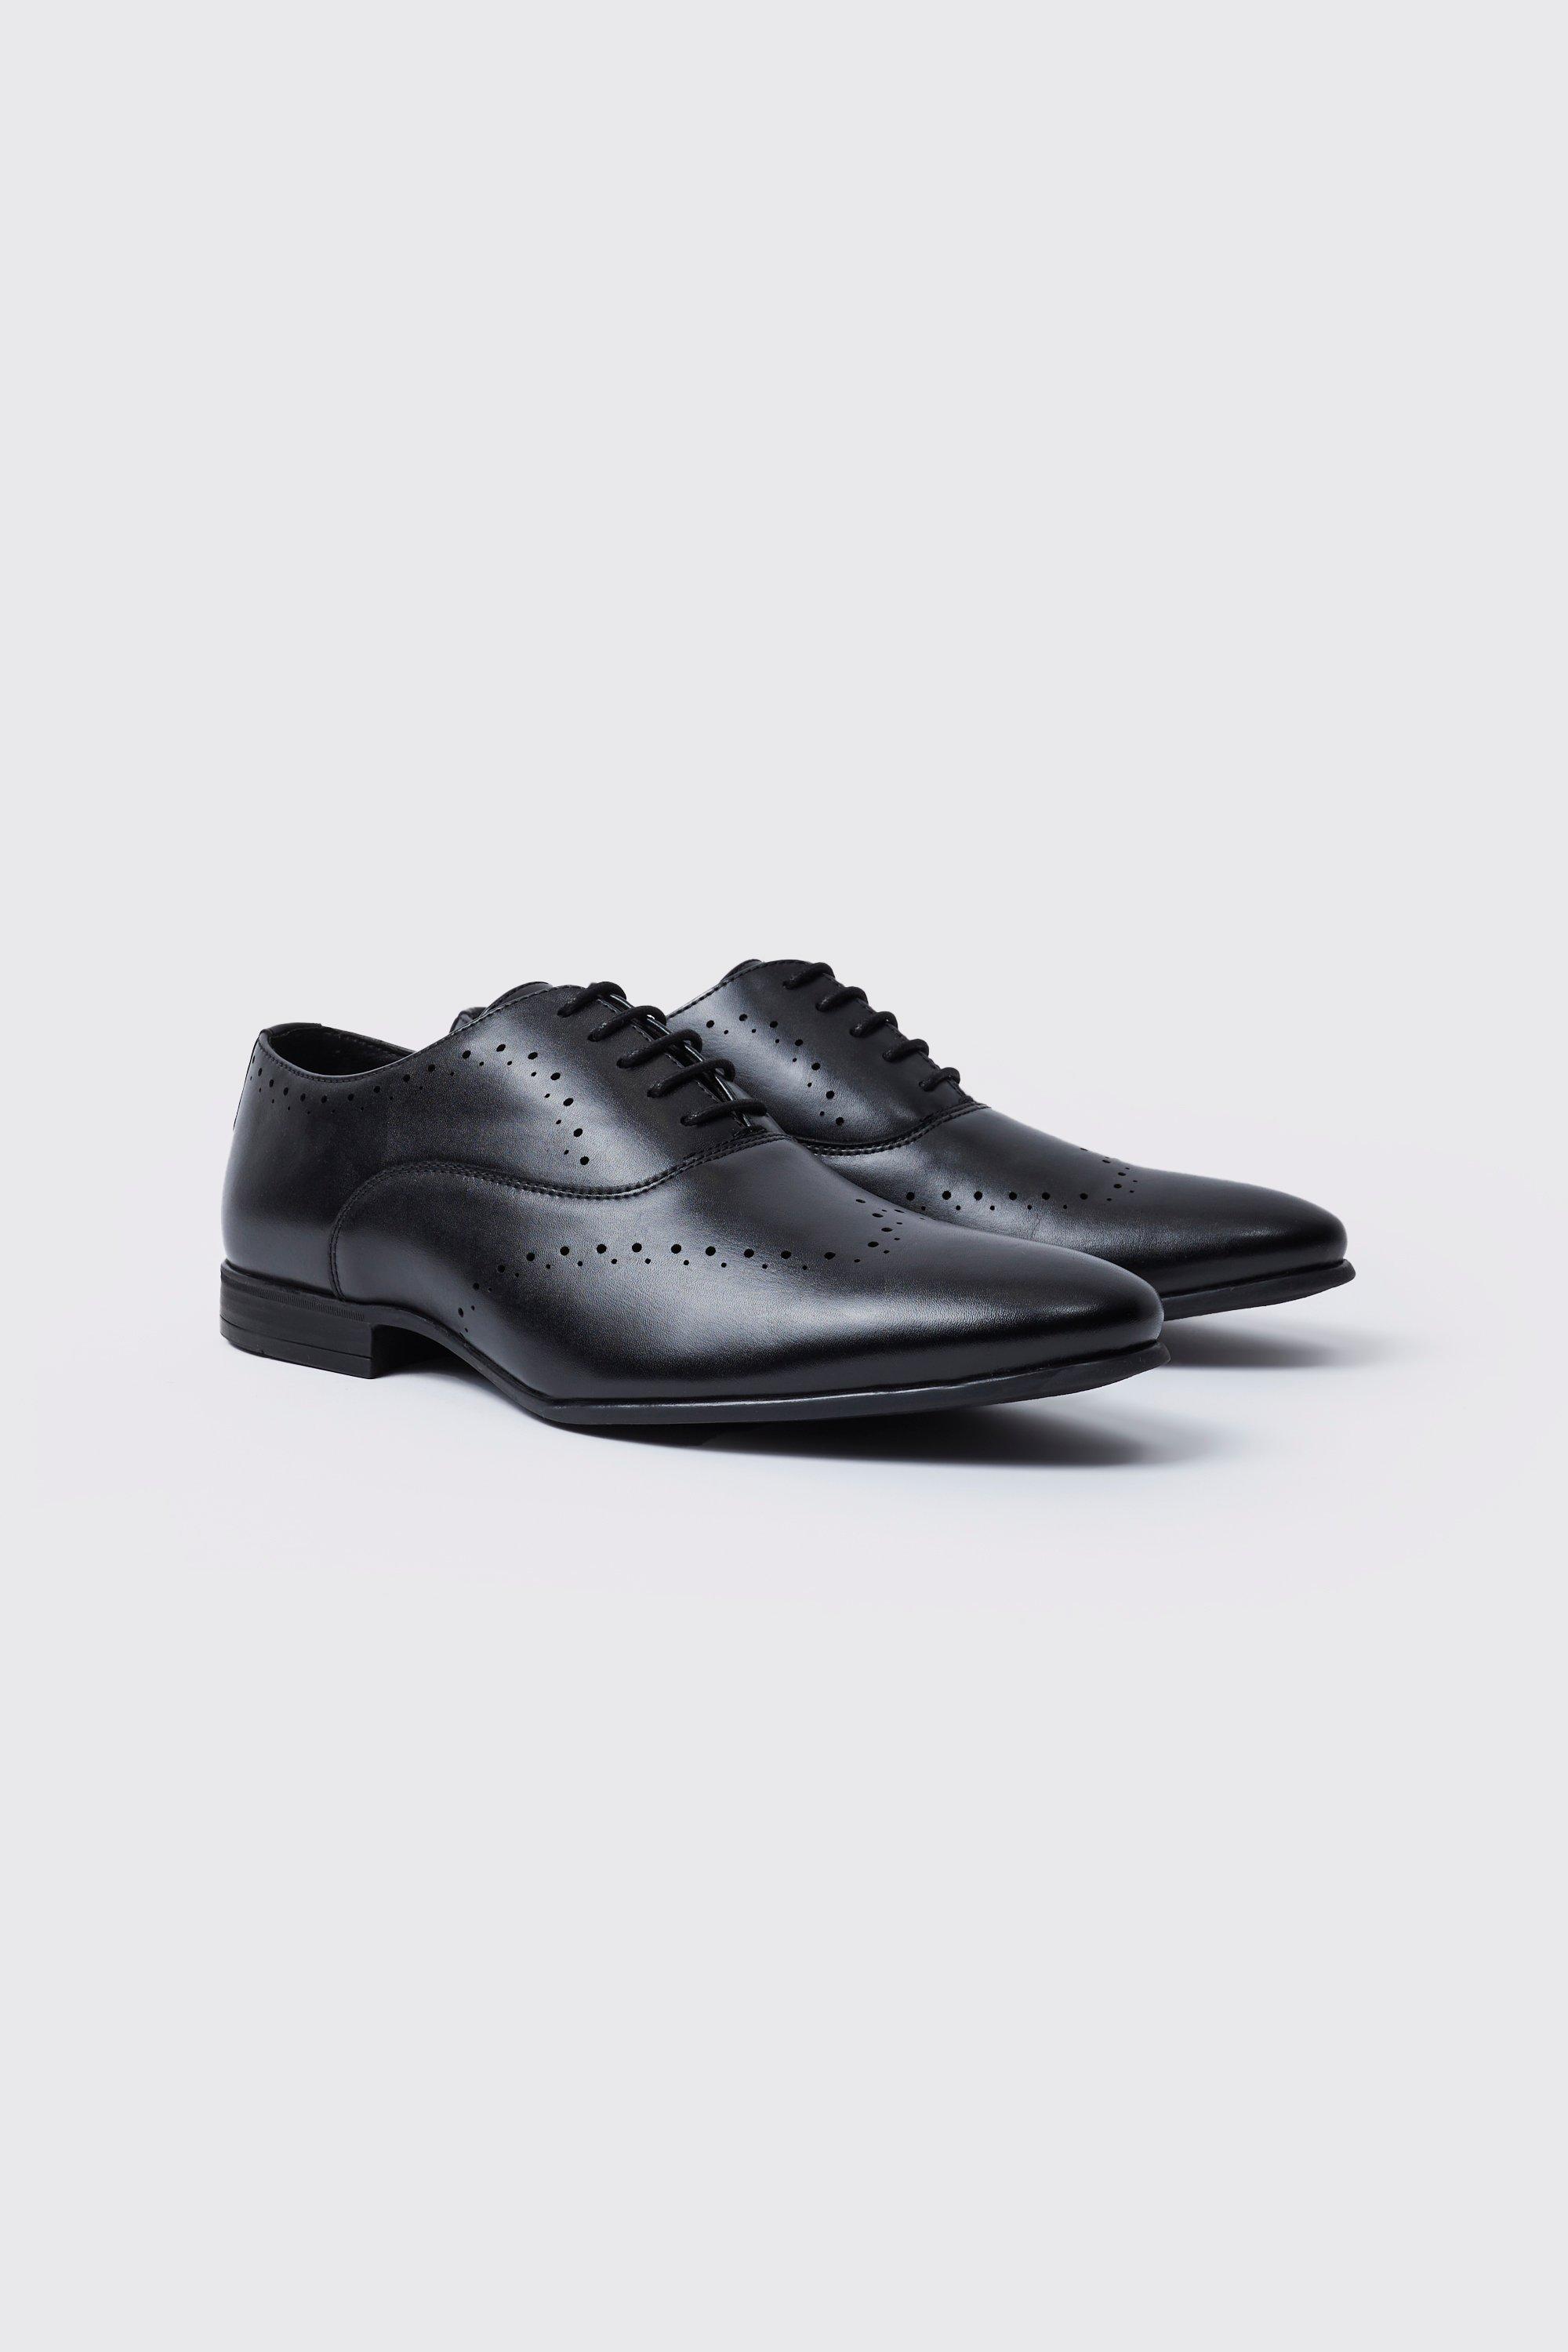 chaussures derby perforées homme - noir - 43, noir